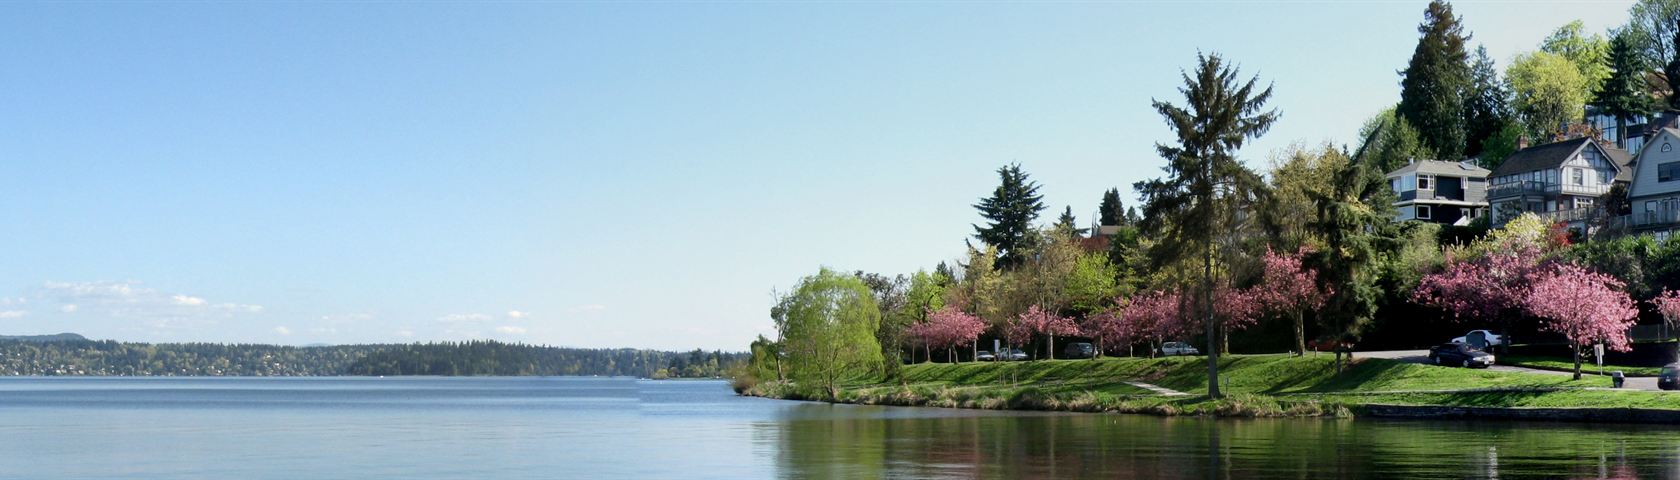 Seattle Lake